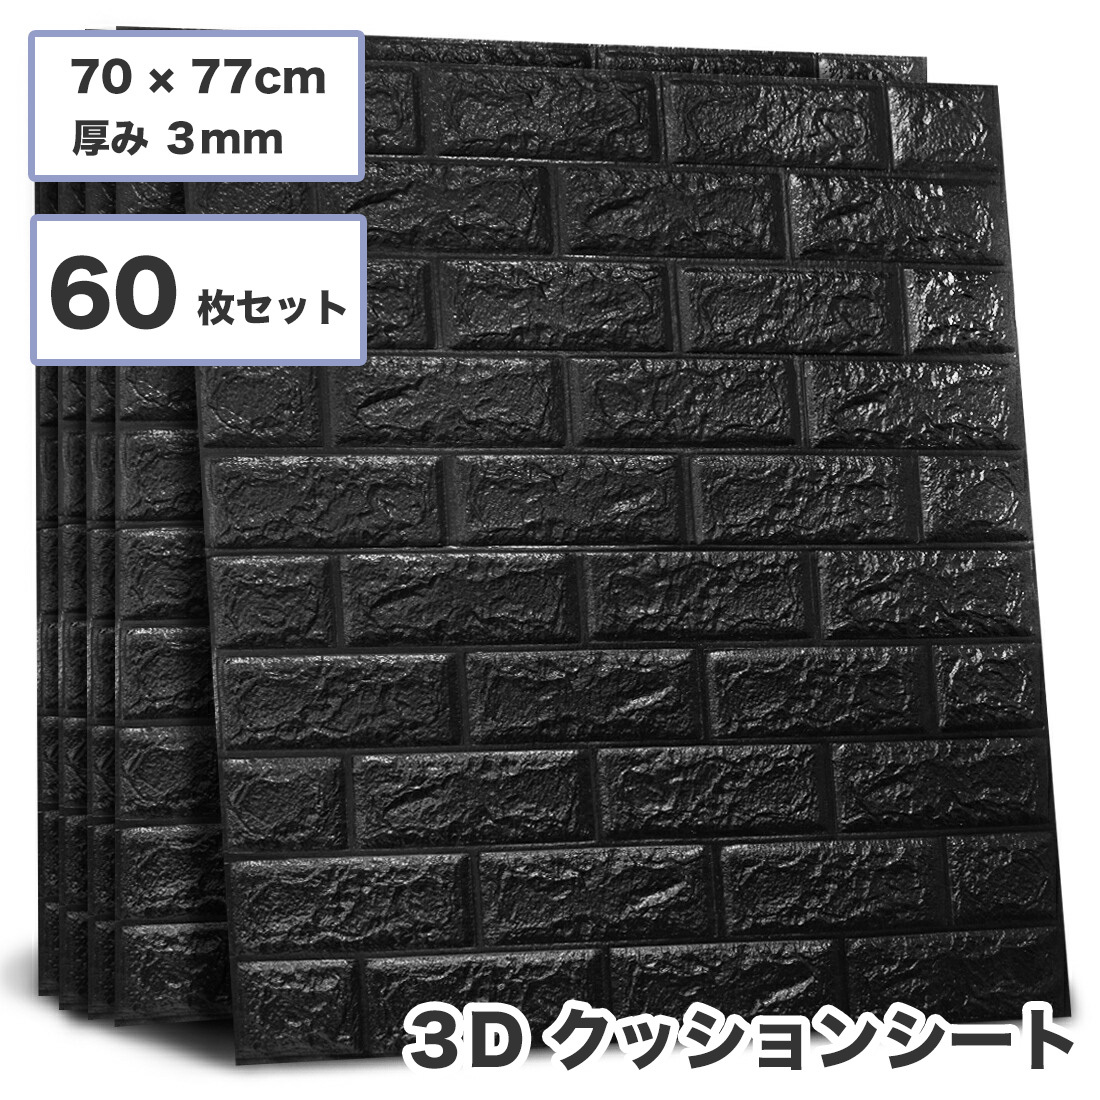 3D壁紙 レンガ調 60枚セット 70×77cm 厚さ3mm ブラック 薄めタイプ DIYクッション シール シート 立体 壁用 レンガ 貼るだけ sl026-bk-60p_画像1